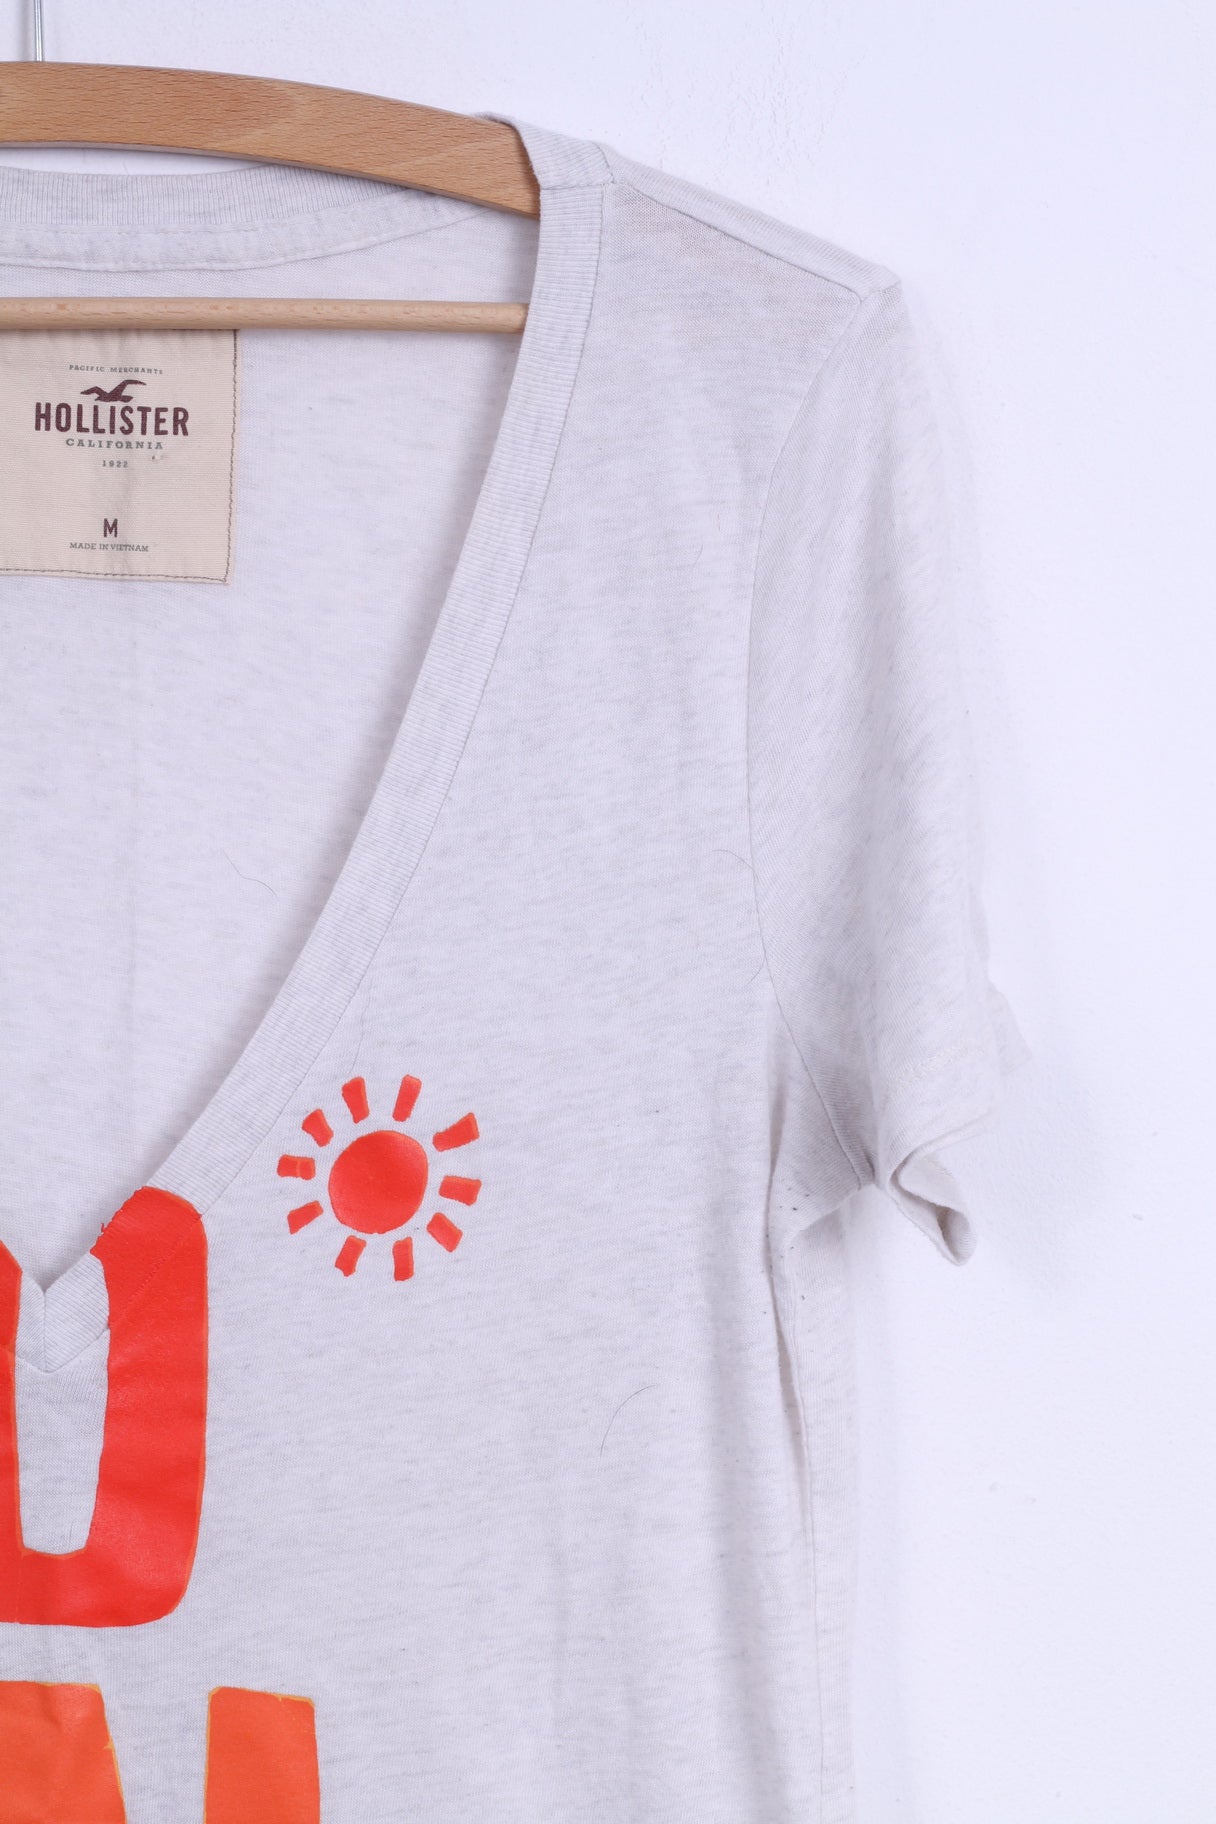 Hollister Womens M Shirt Beige Cotton V Neck Graphic Summer Sun Top